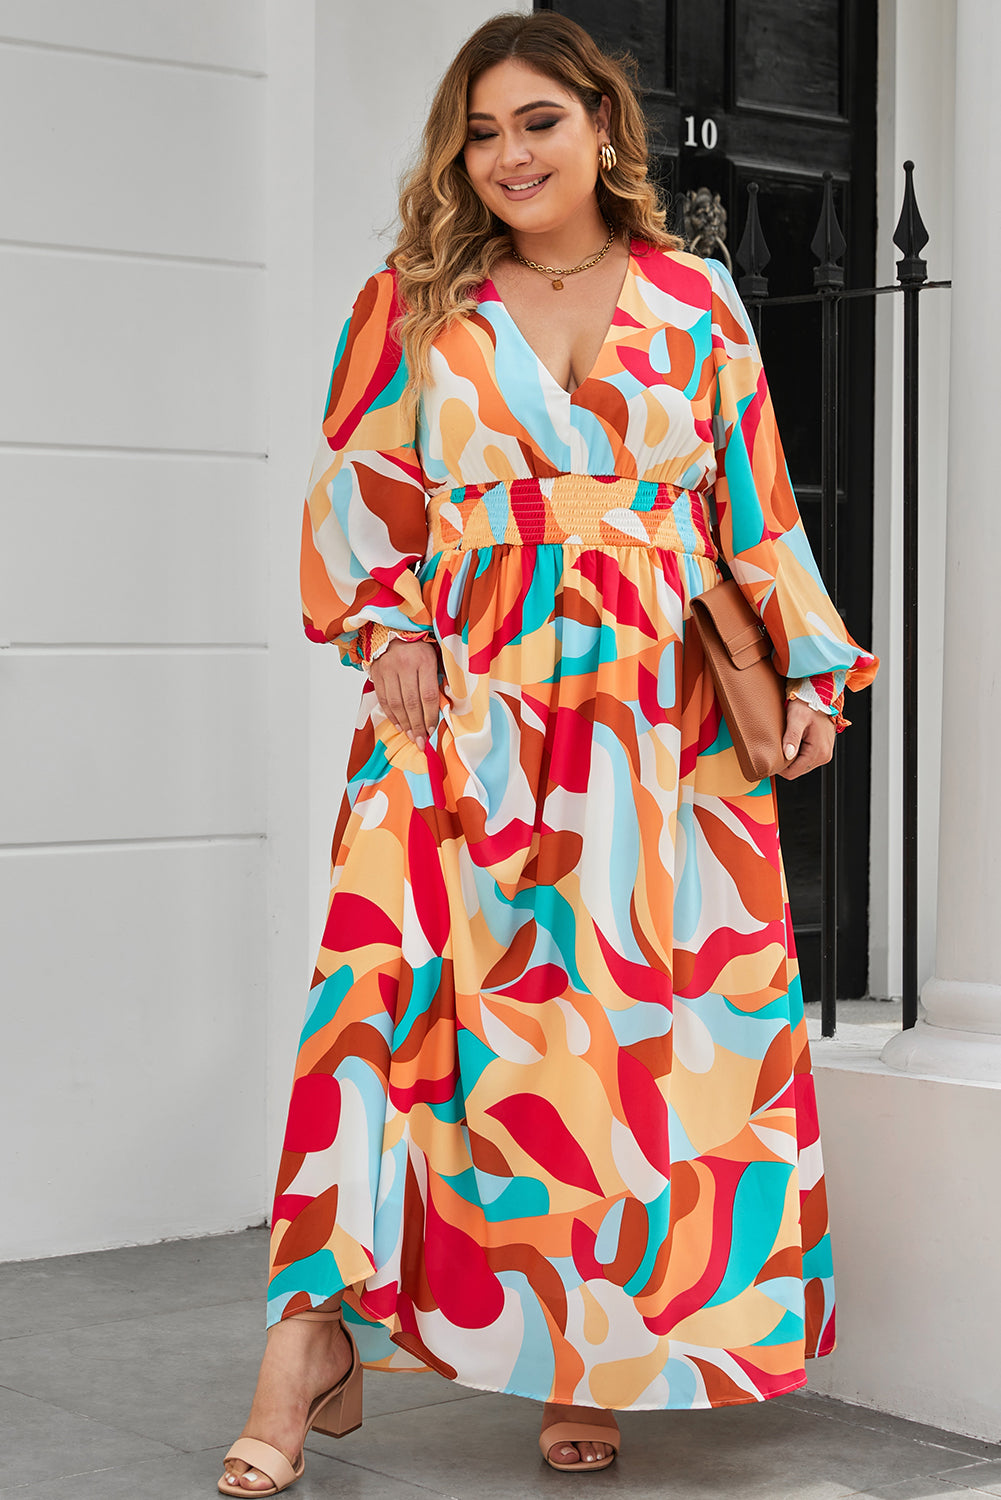 Robe Longue Multicolore à Manches Évêques Imprimée Abstraite de Grande Taille